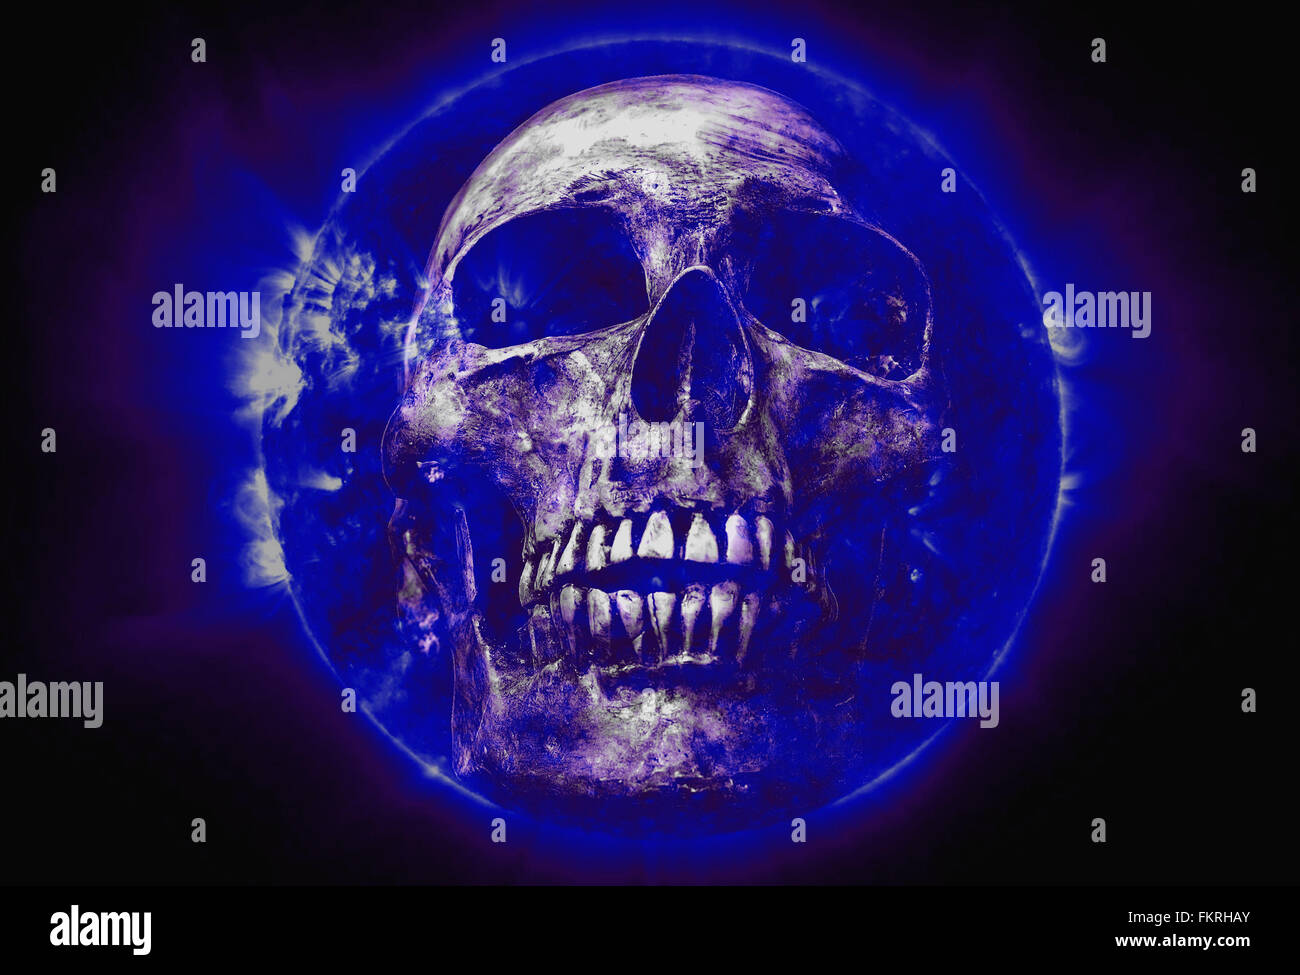 abstrakten Symbol Idee, macht der Glaube 2016, der Schädel auf blaue Sonne schwarzen Hintergrund, Sonne Bild von der NASA. Stockfoto